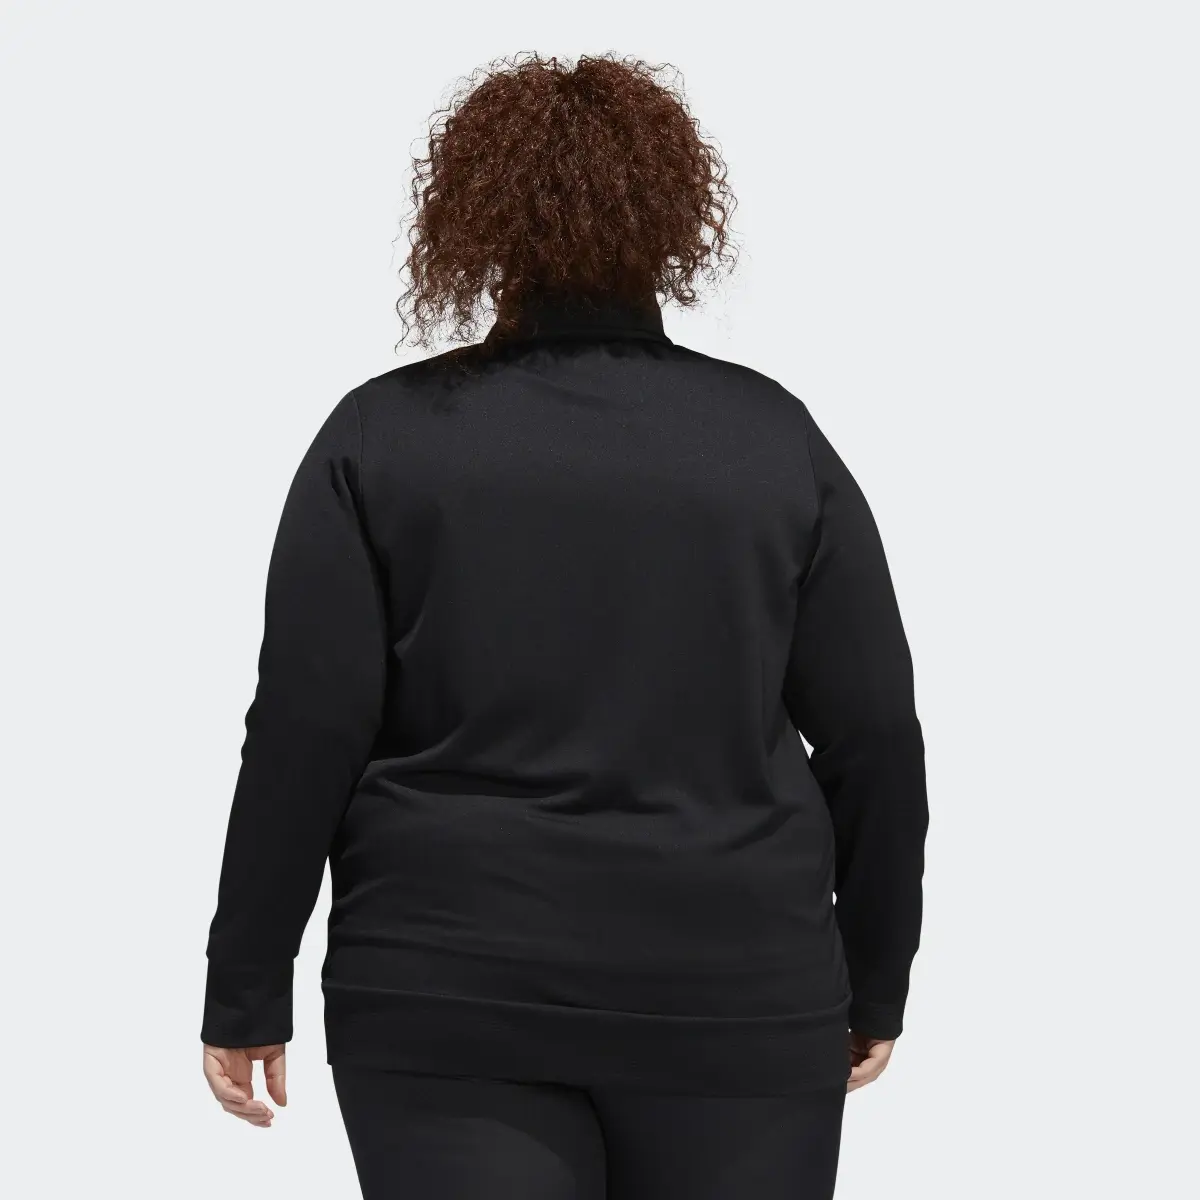 Adidas Textured Full-Zip Jacke – Große Größen. 3